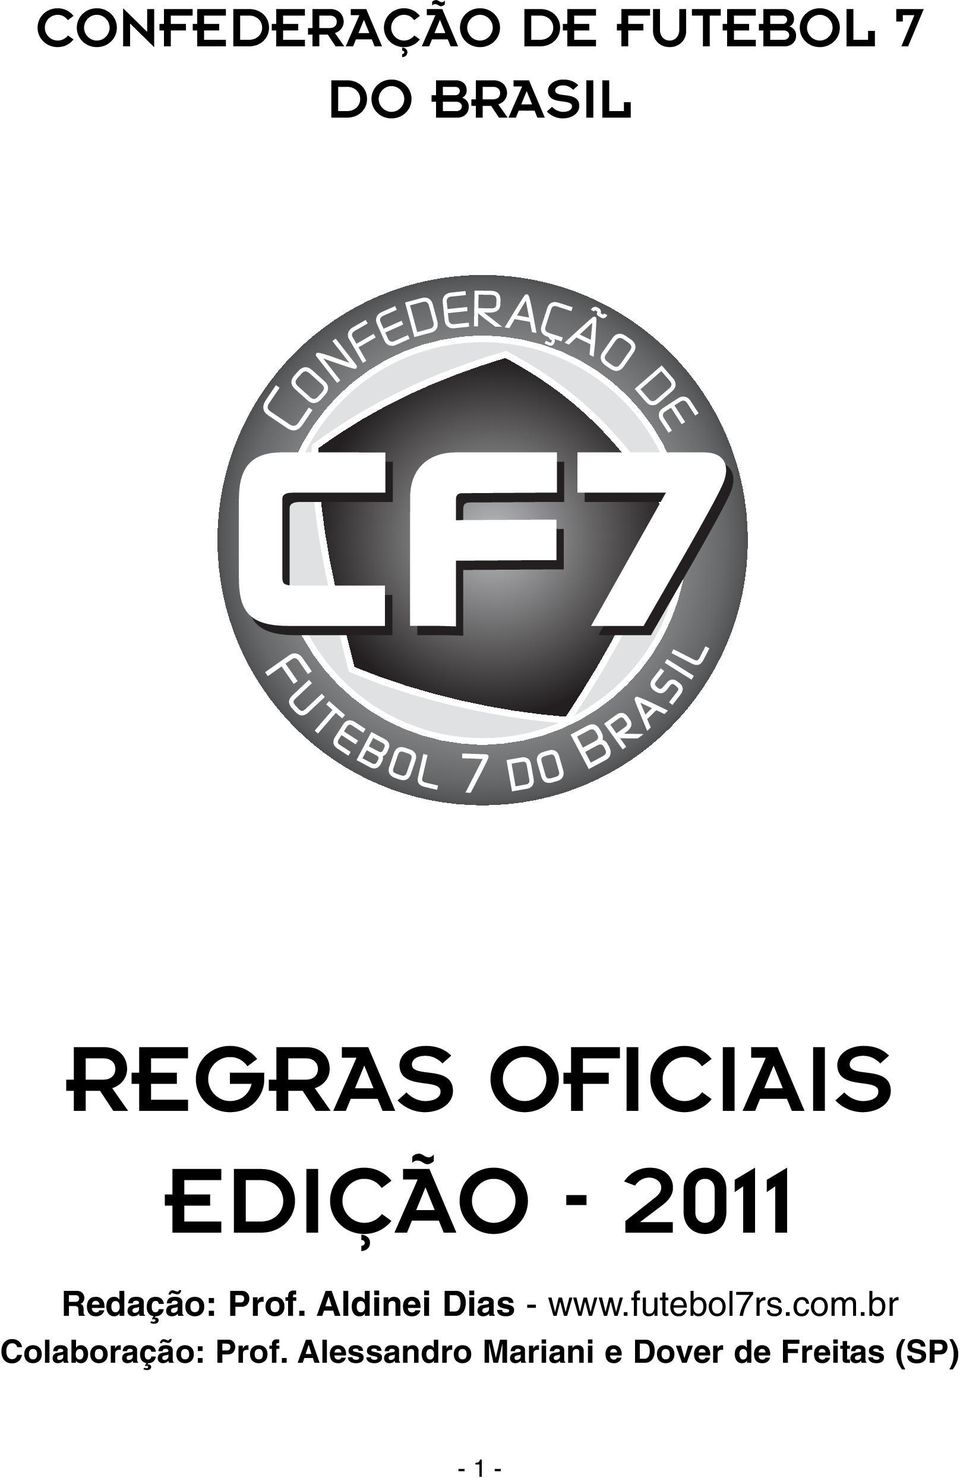 Aldinei Dias - www.futebol7rs.com.